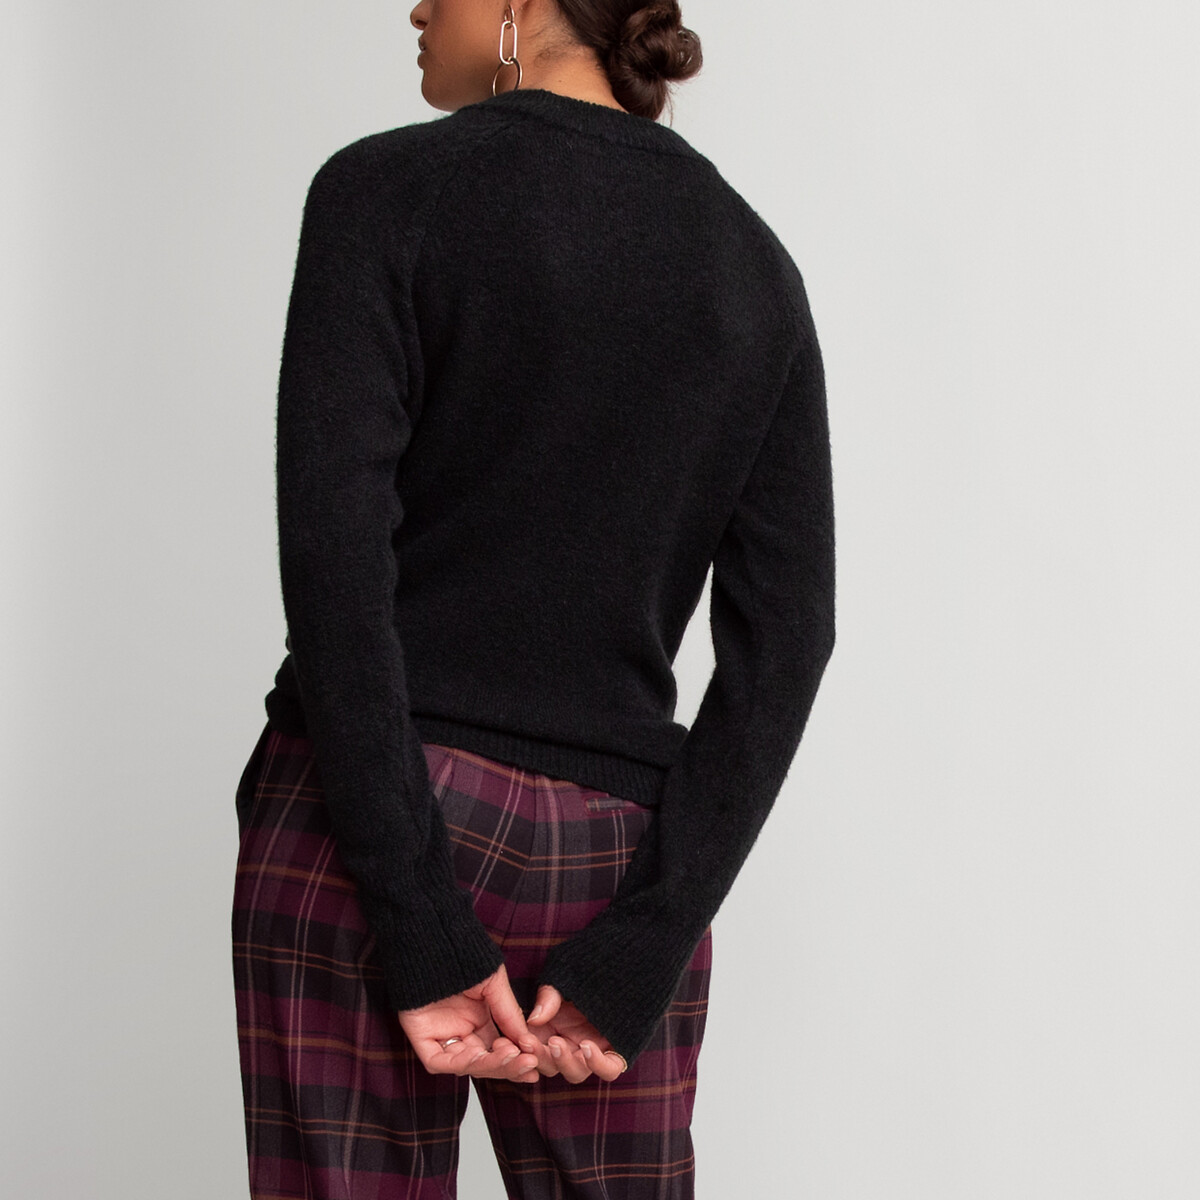 Пуловер La Redoute С круглым вырезом из плотного трикотажа S черный, размер S - фото 4